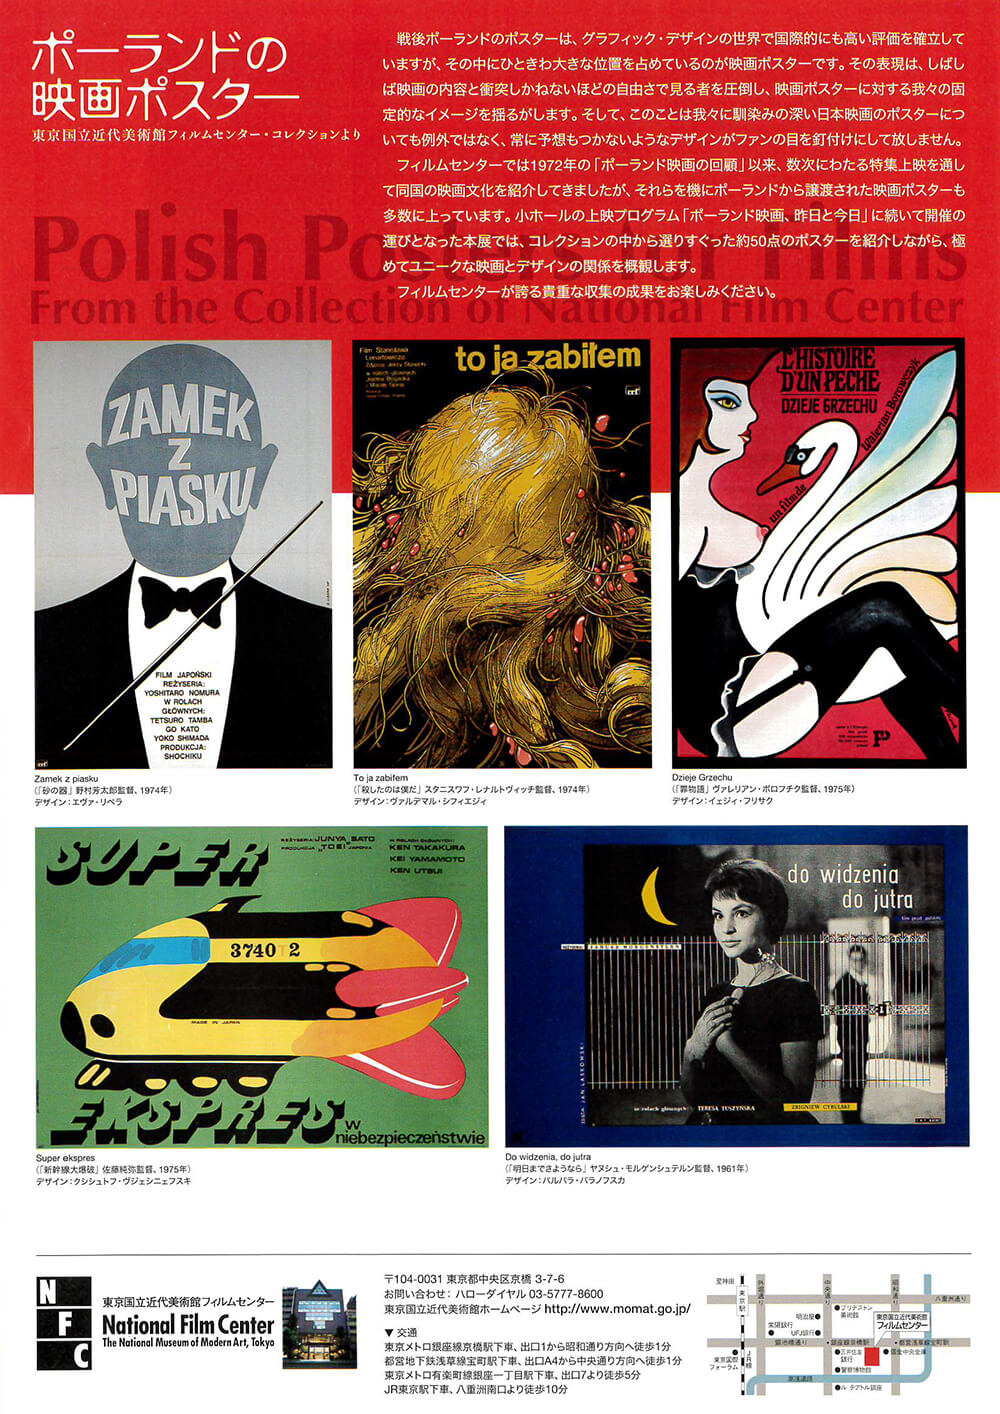 ポーランドの映画ポスター Fajp フライヤー チラシのグラフィックデザイン参考サイト